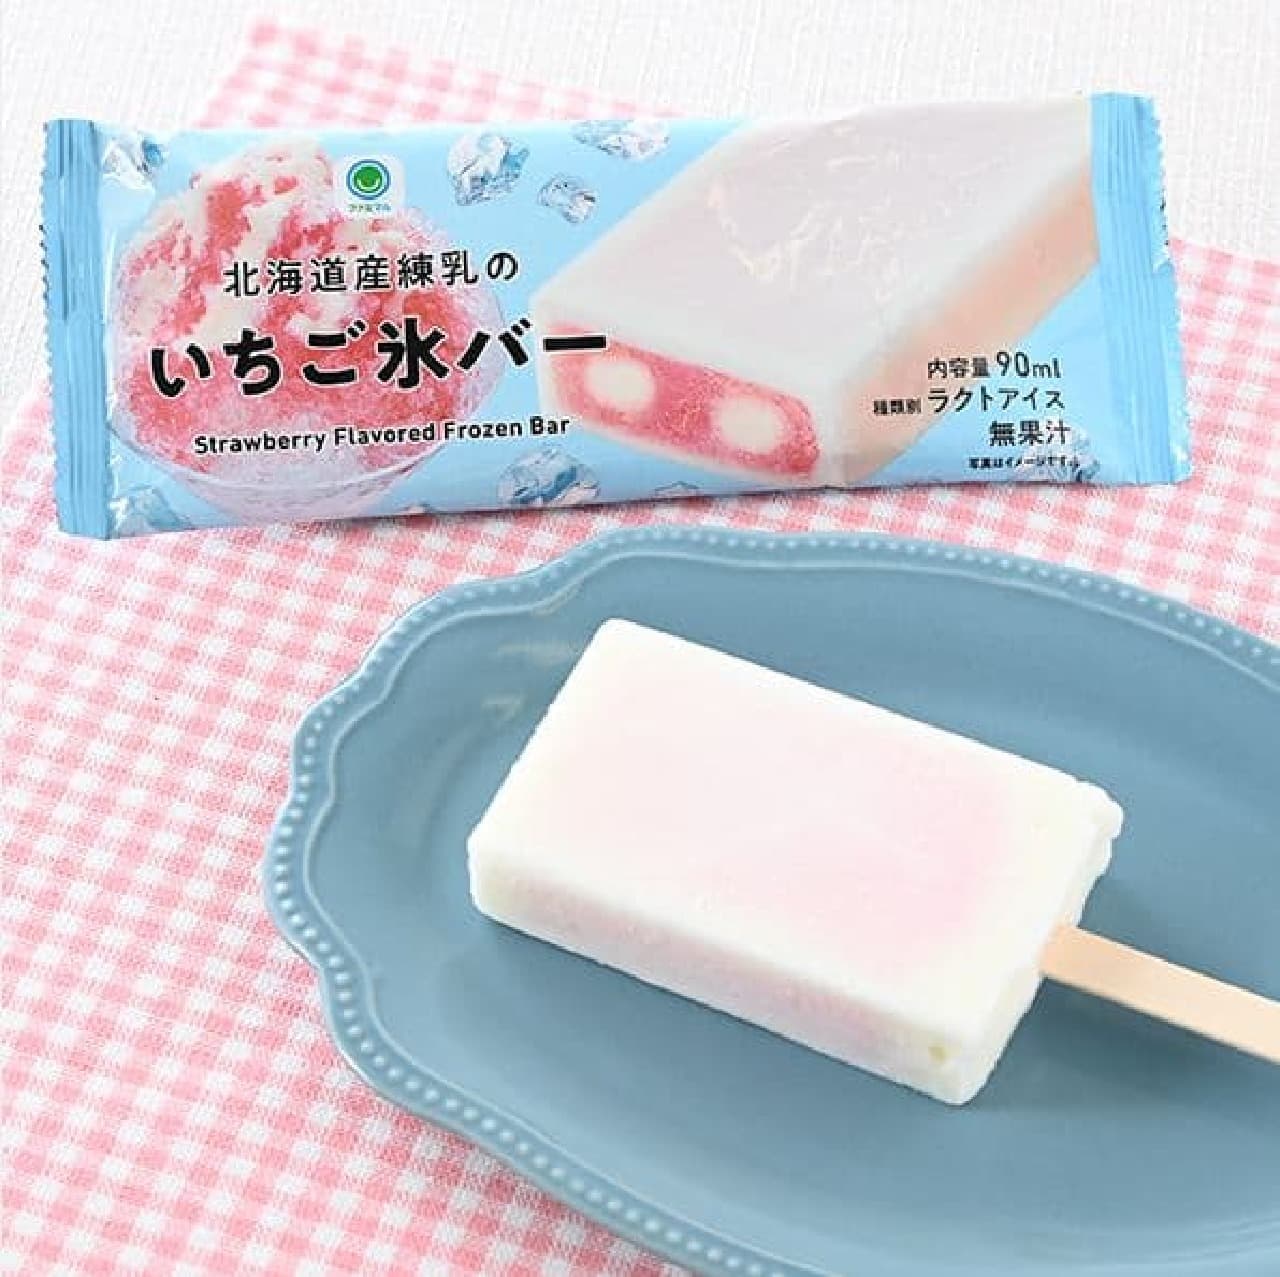 ファミリーマート「北海道産練乳のいちご氷バー」